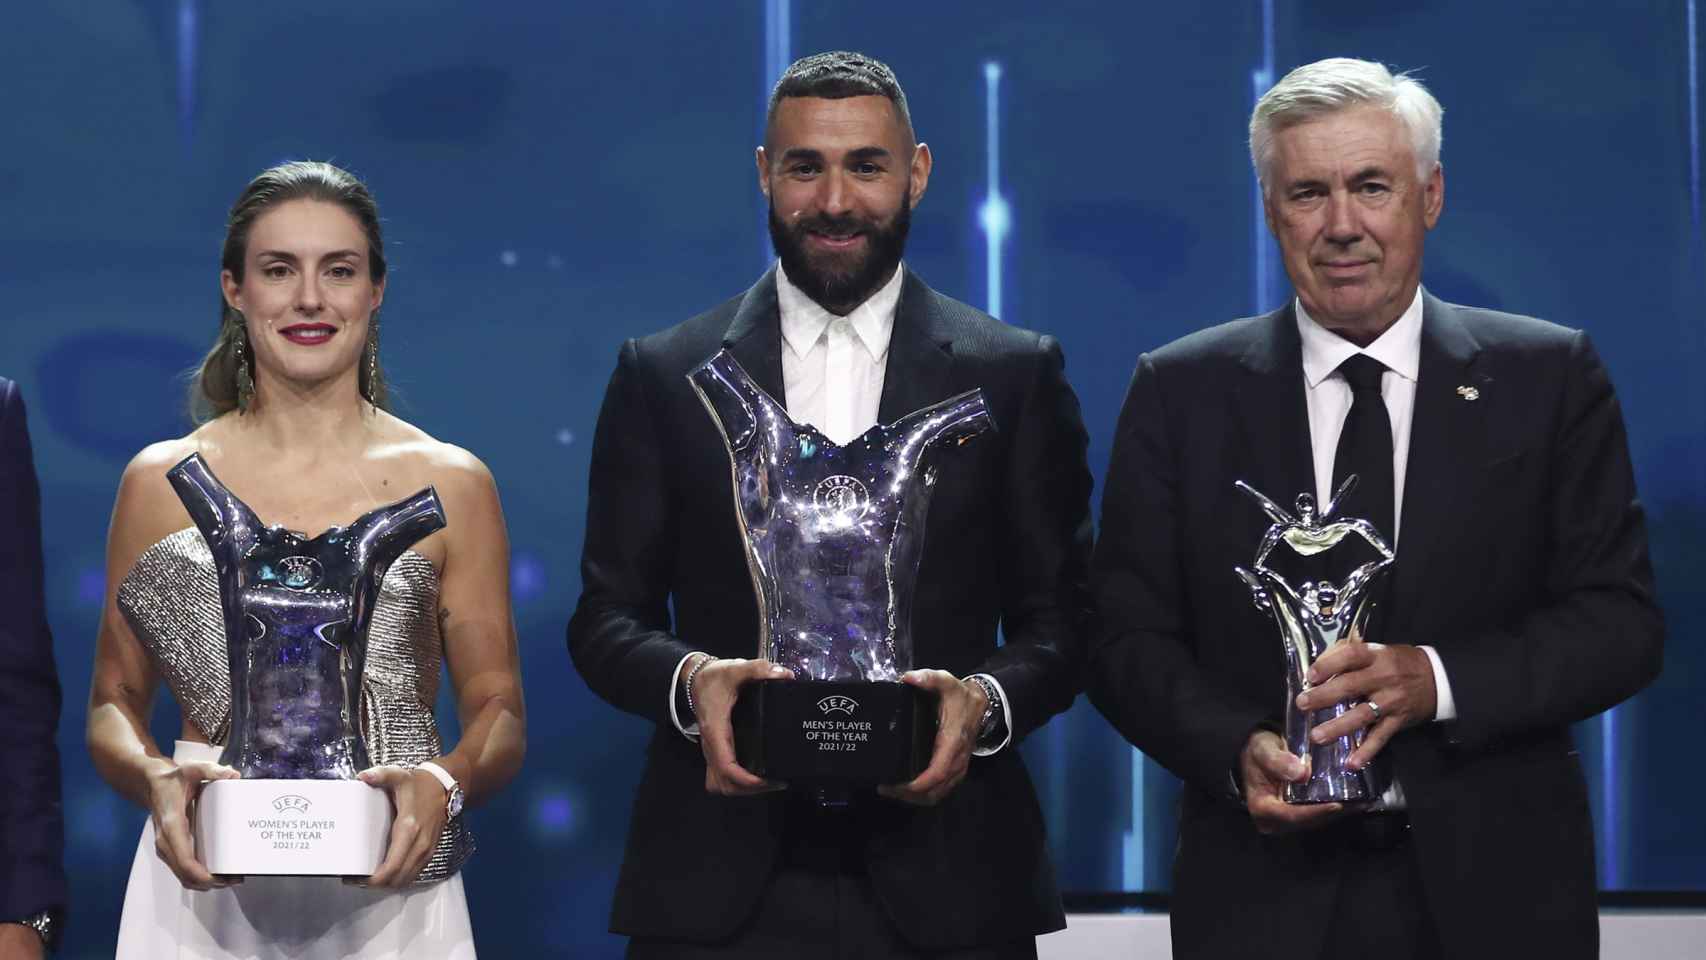 Alexia Putellas, Benzema y Ancelotti, los mejores del año para la UEFA